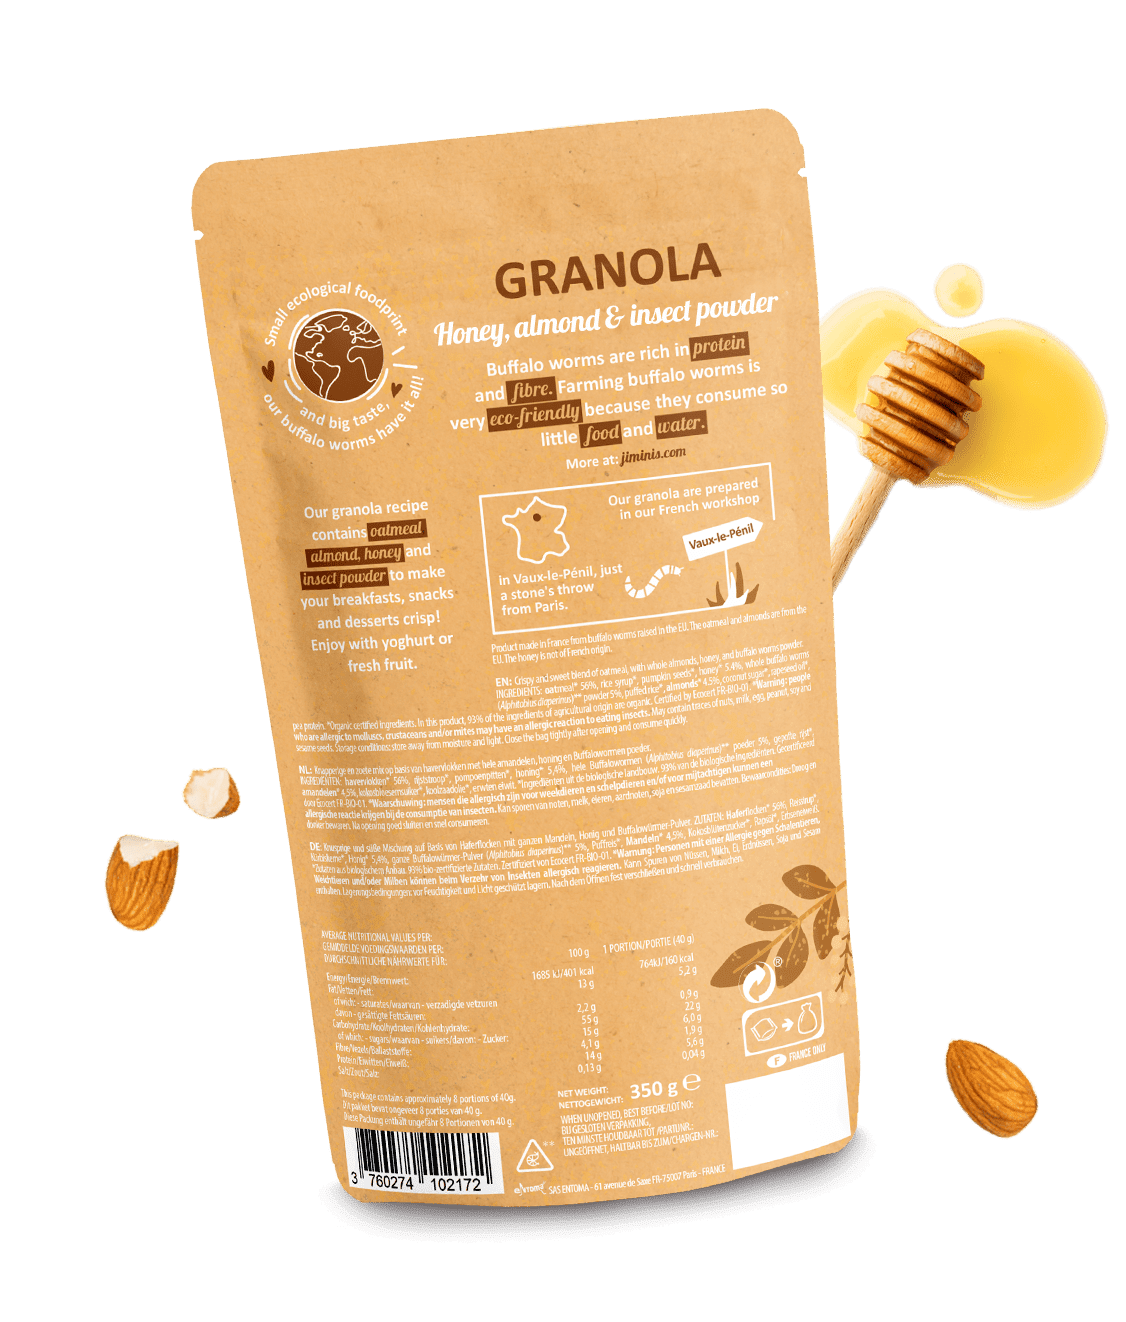 Le granola miel & amandes 